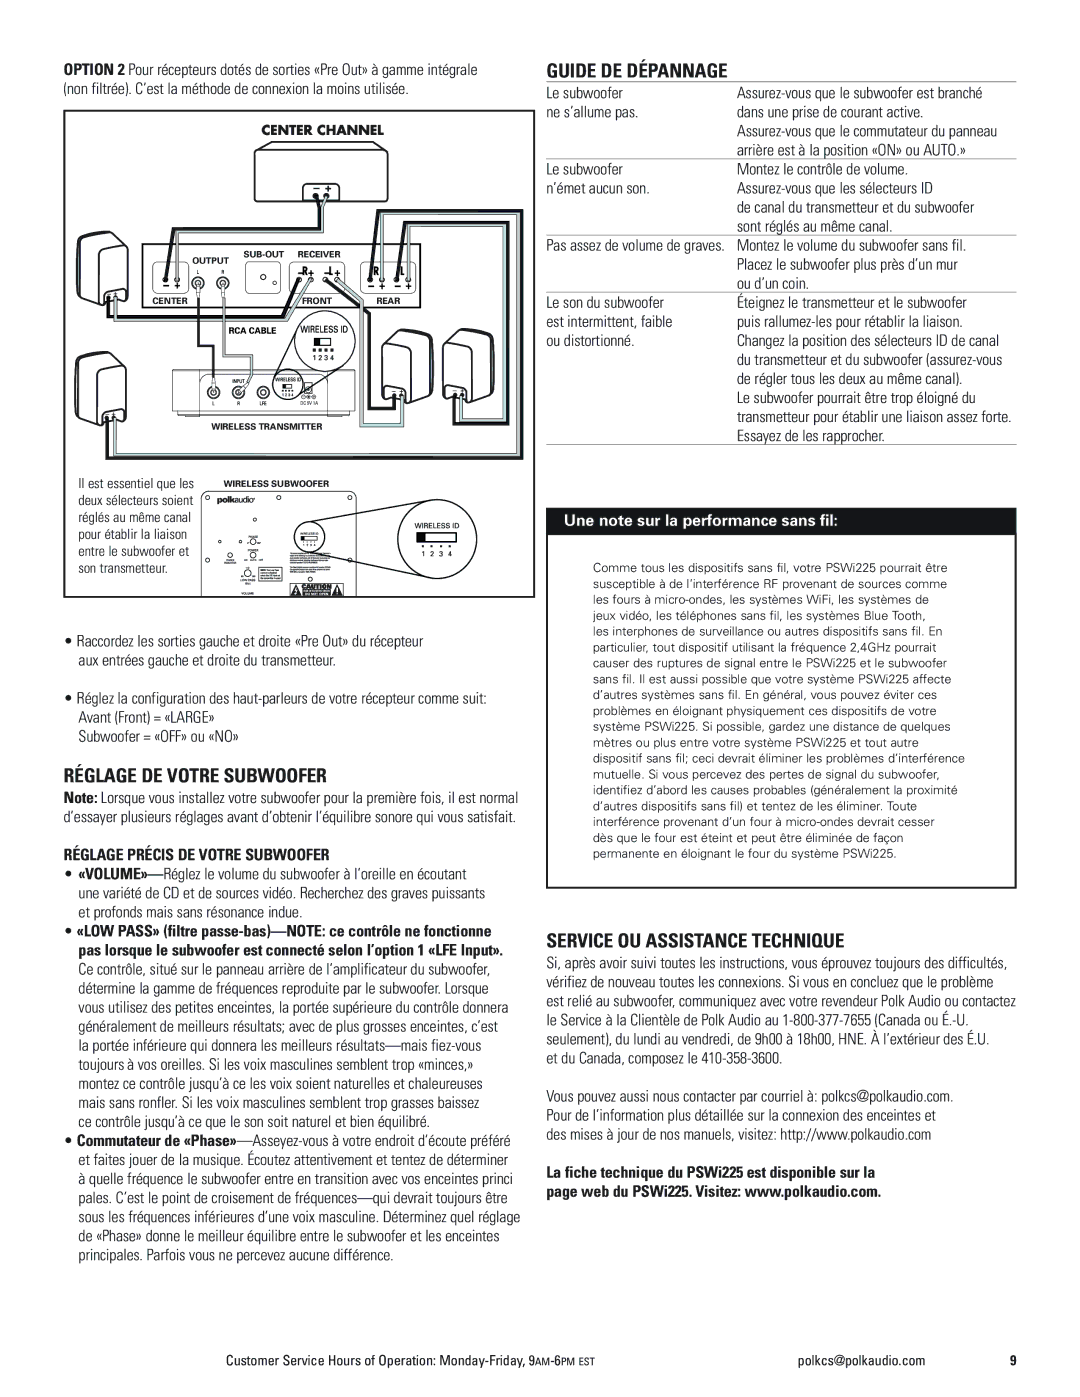 Polk Audio PSWi225 owner manual Guide DE Dépannage, Réglage DE Votre Subwoofer, Service OU Assistance Technique 